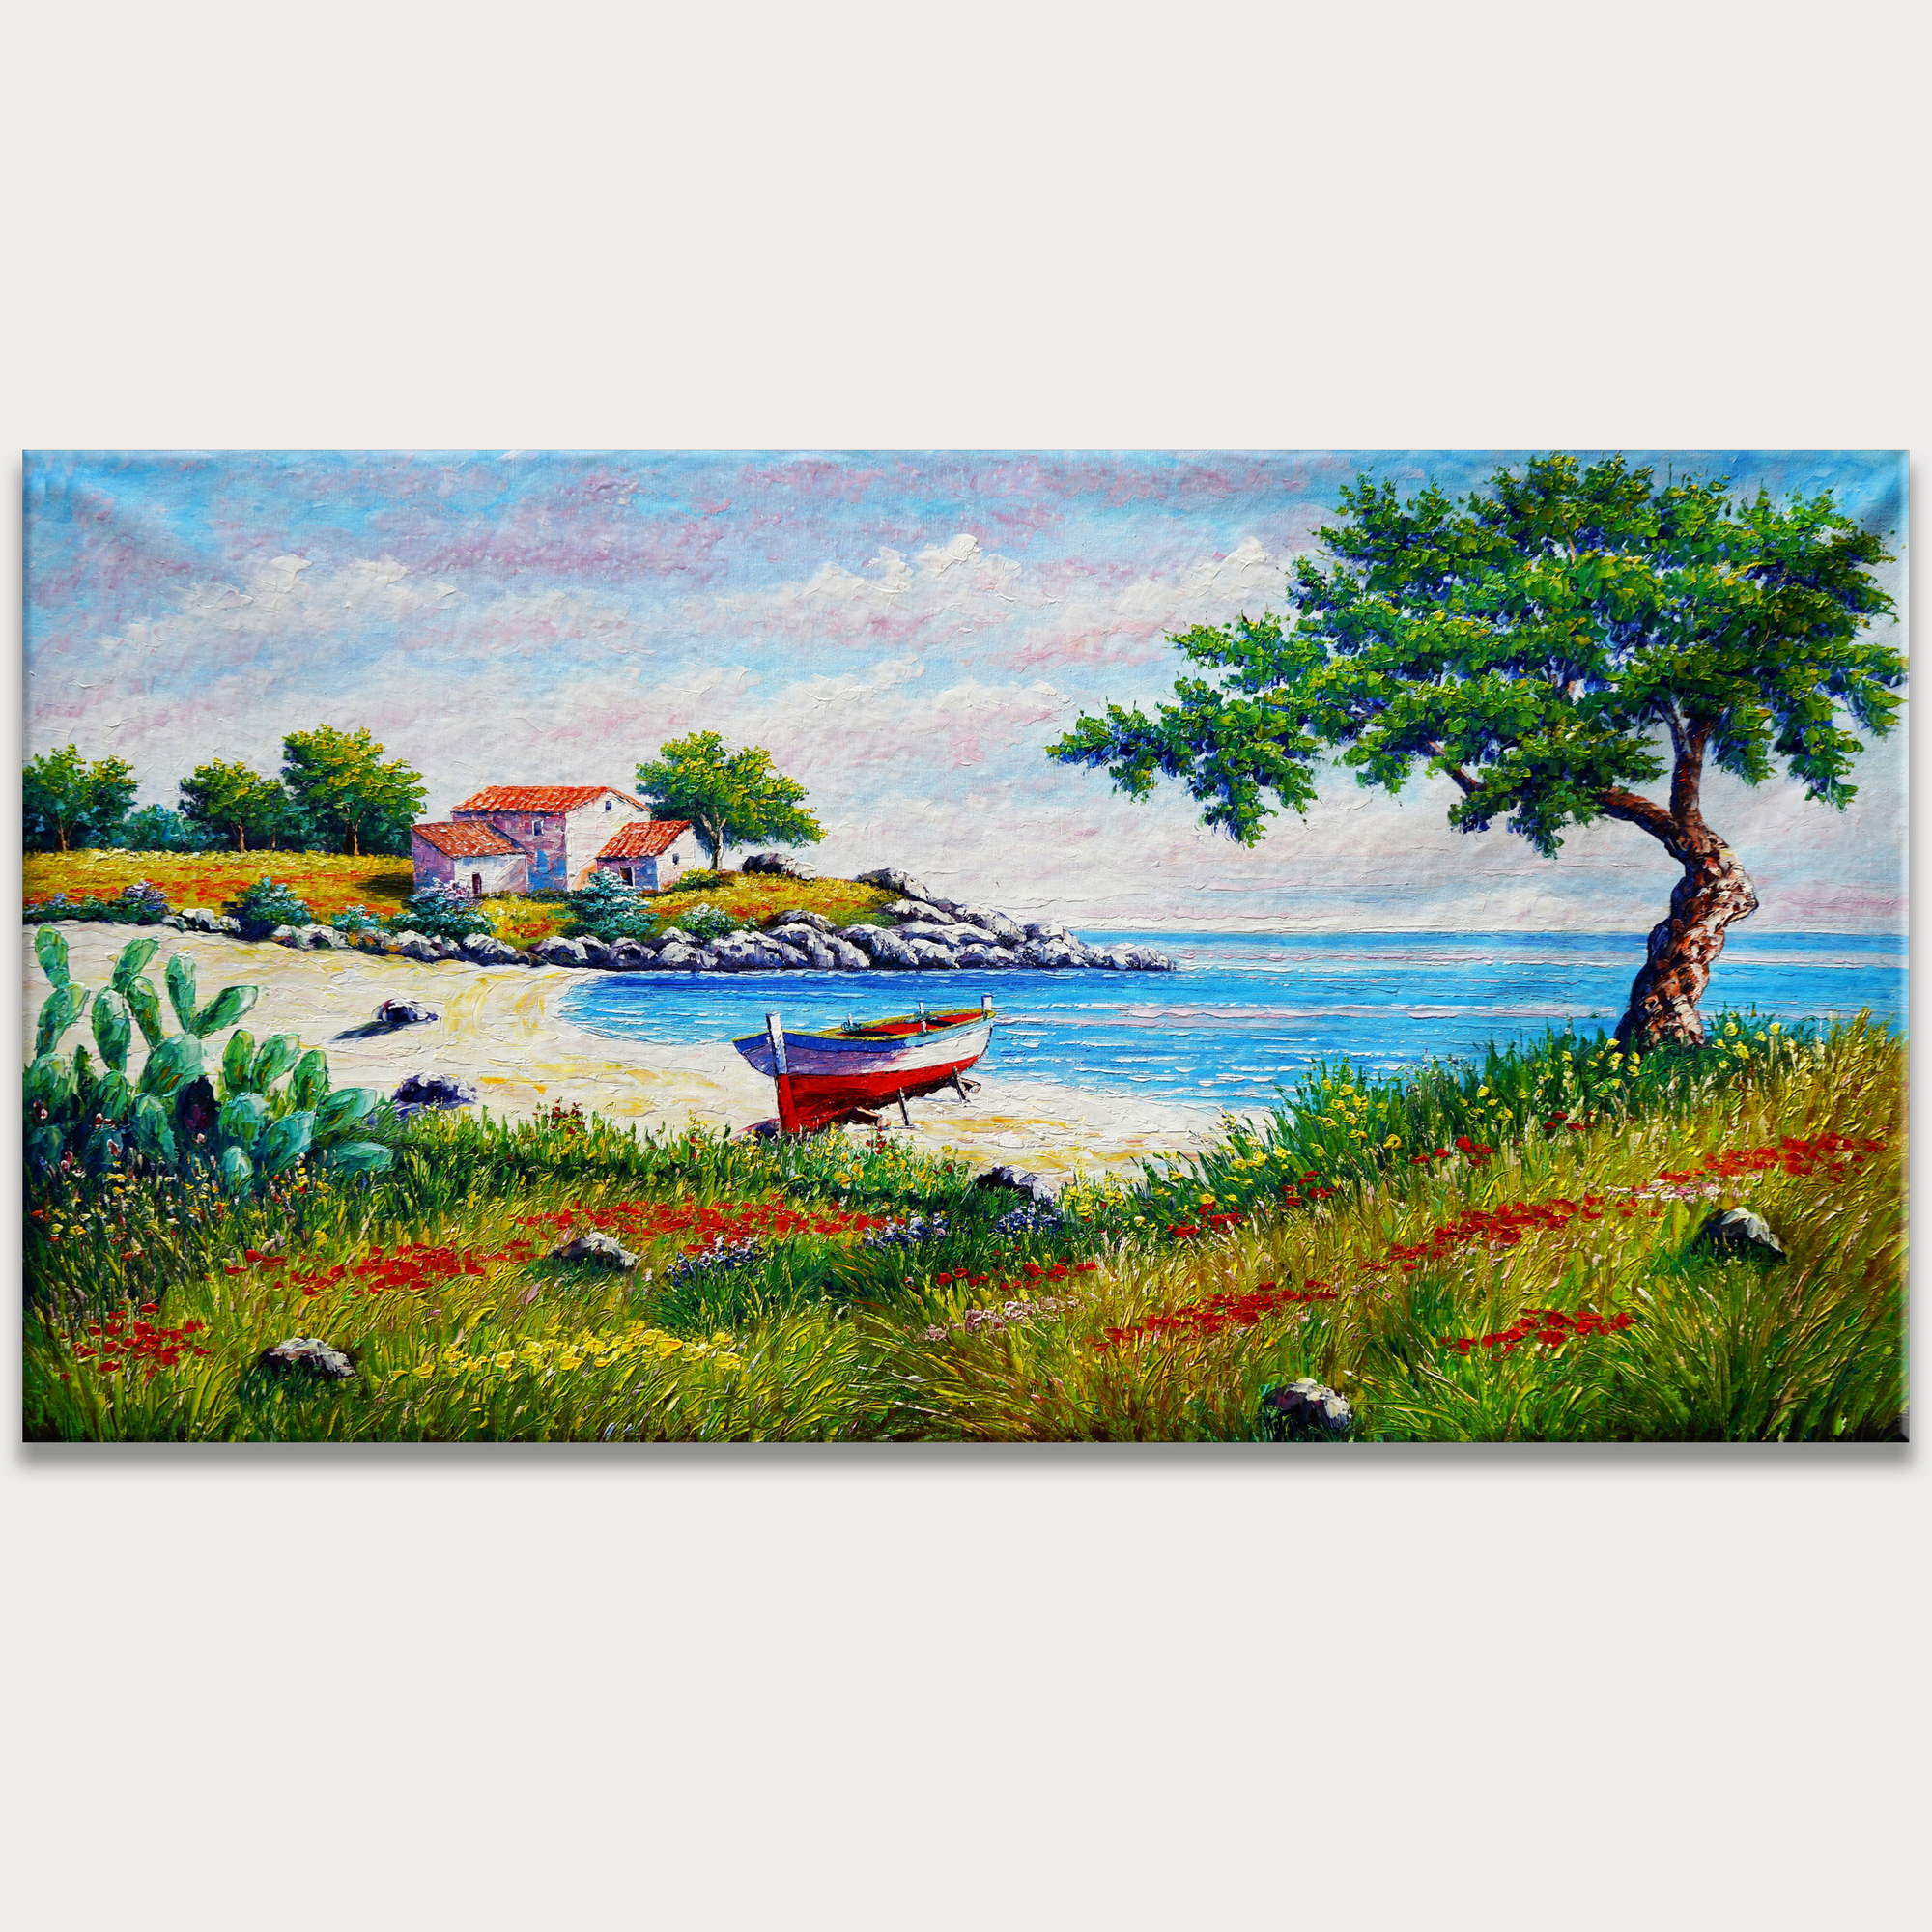 Dipinto a mano Paesaggio Marino Spiaggia Barca 90x180cm